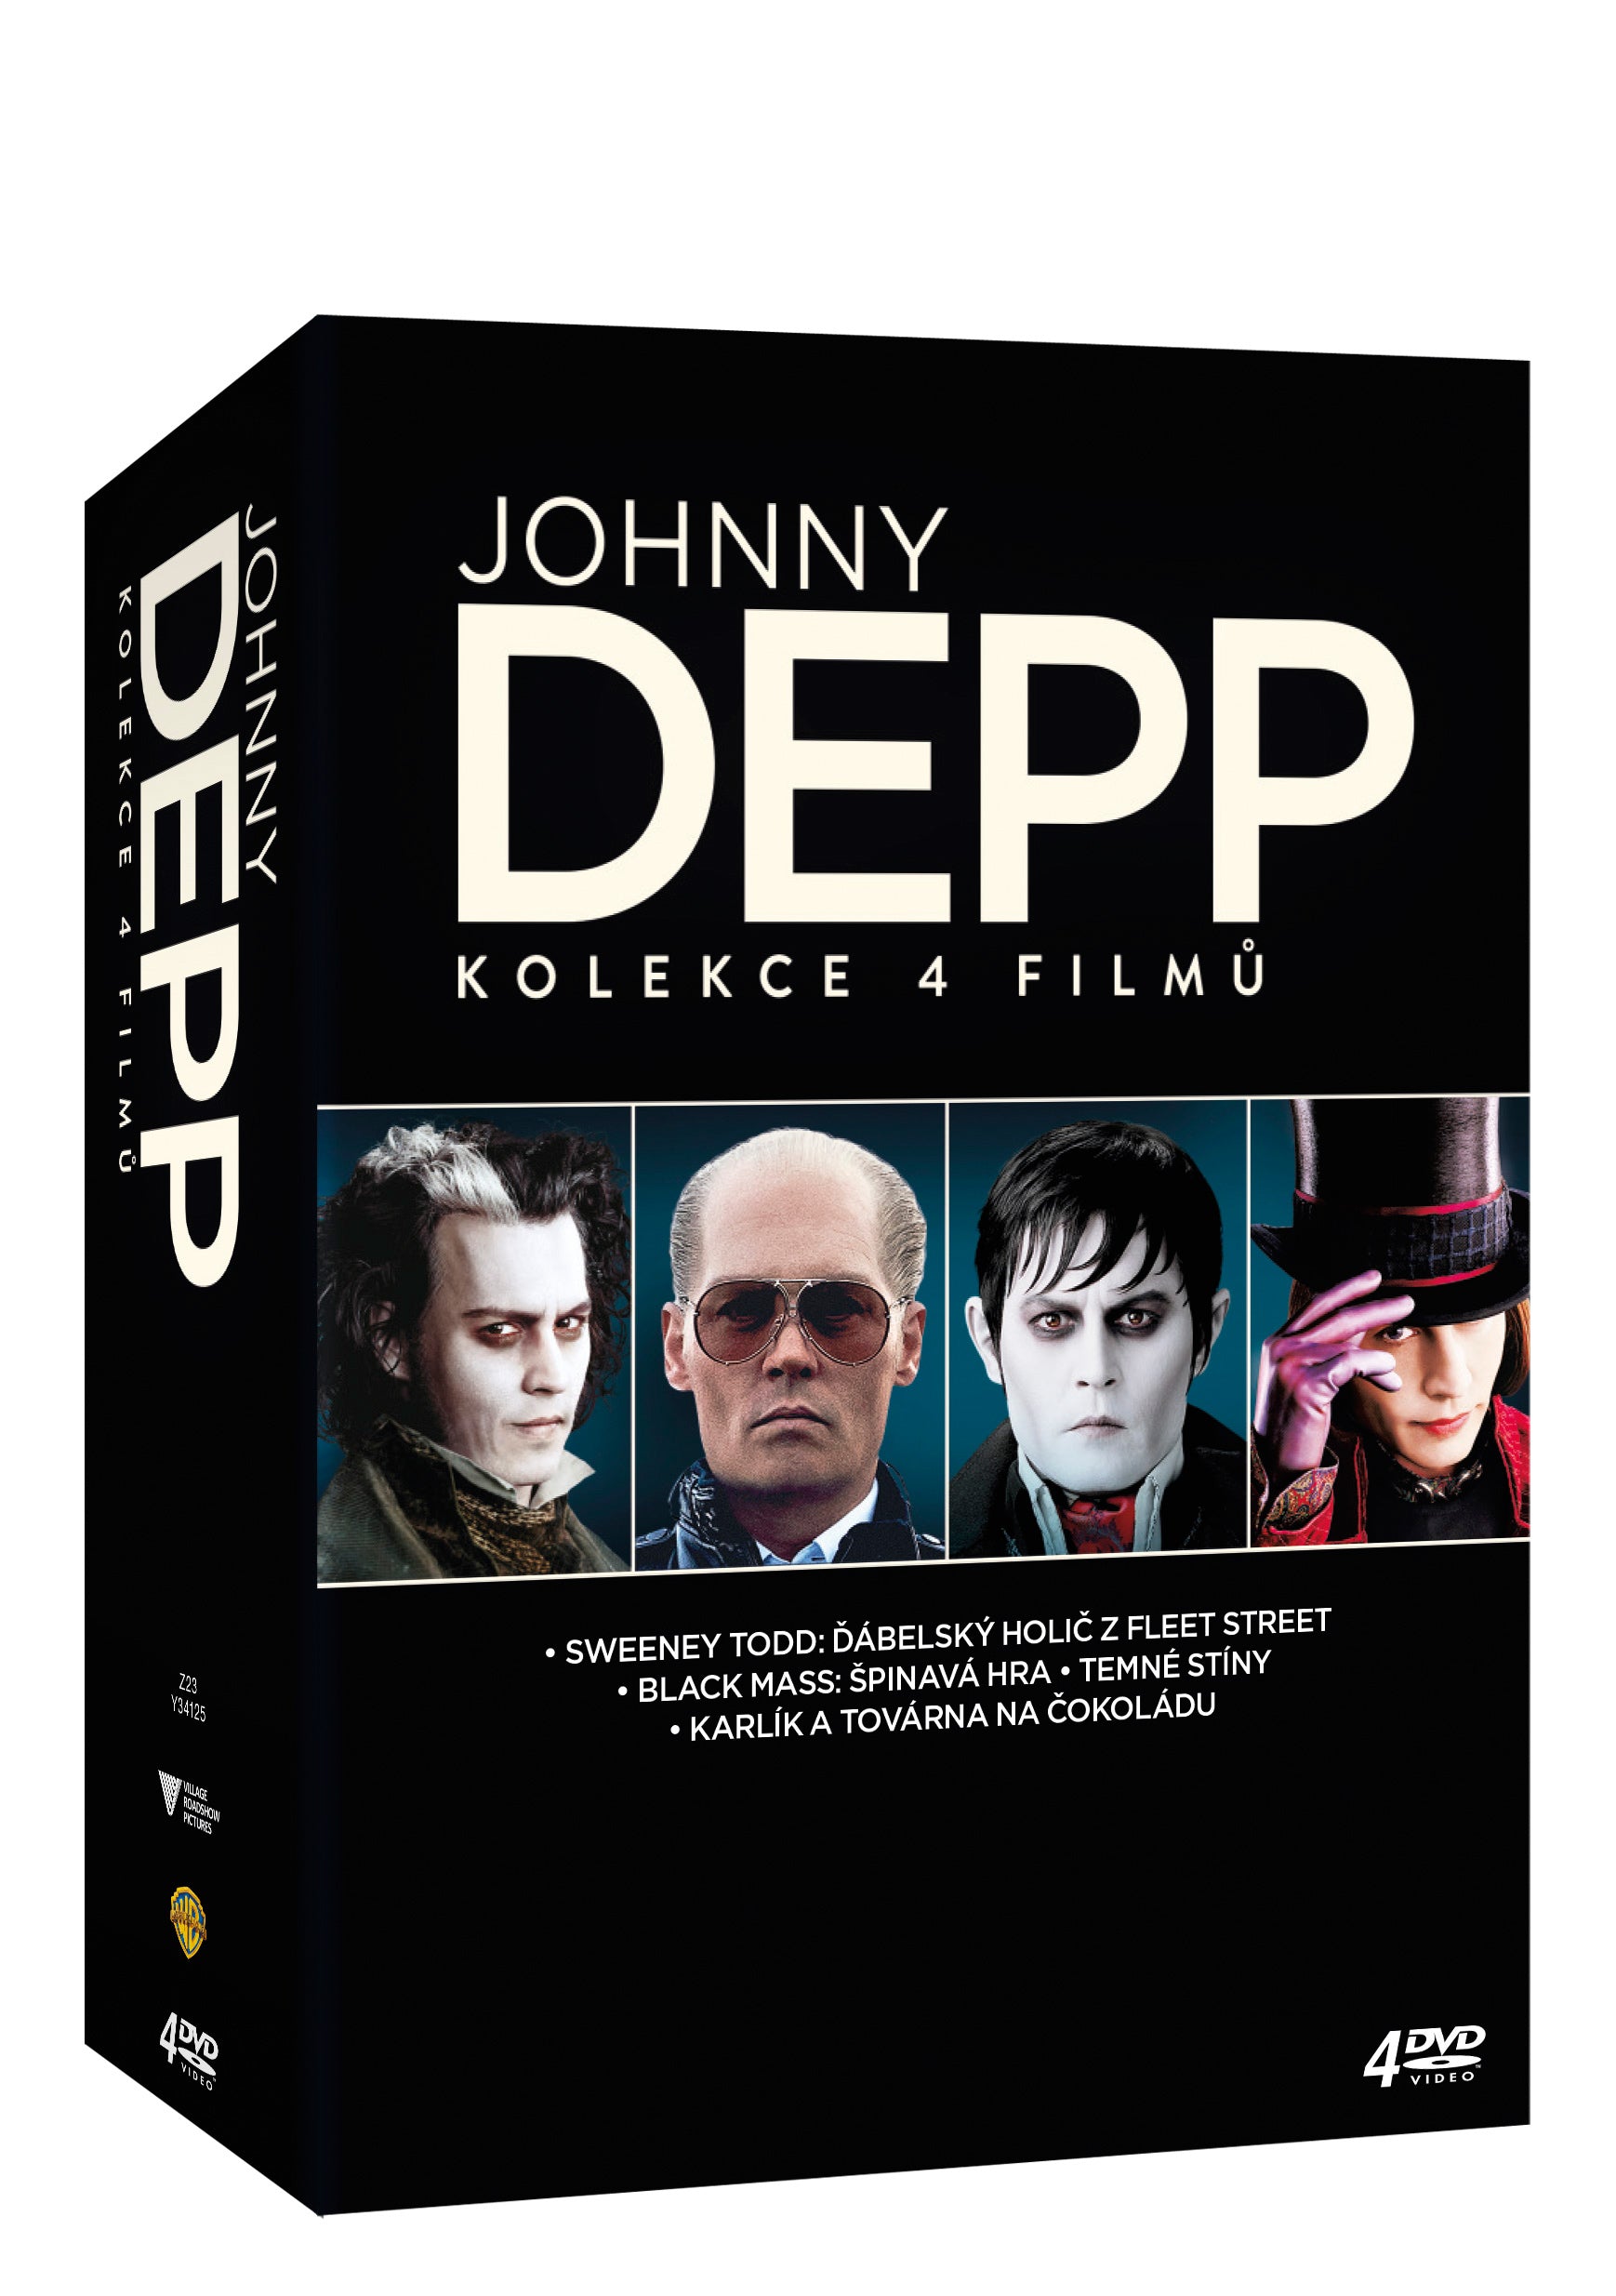 Johnny Depp Sammlung 4DVD / Johnny Depp Sammlung 4DVD